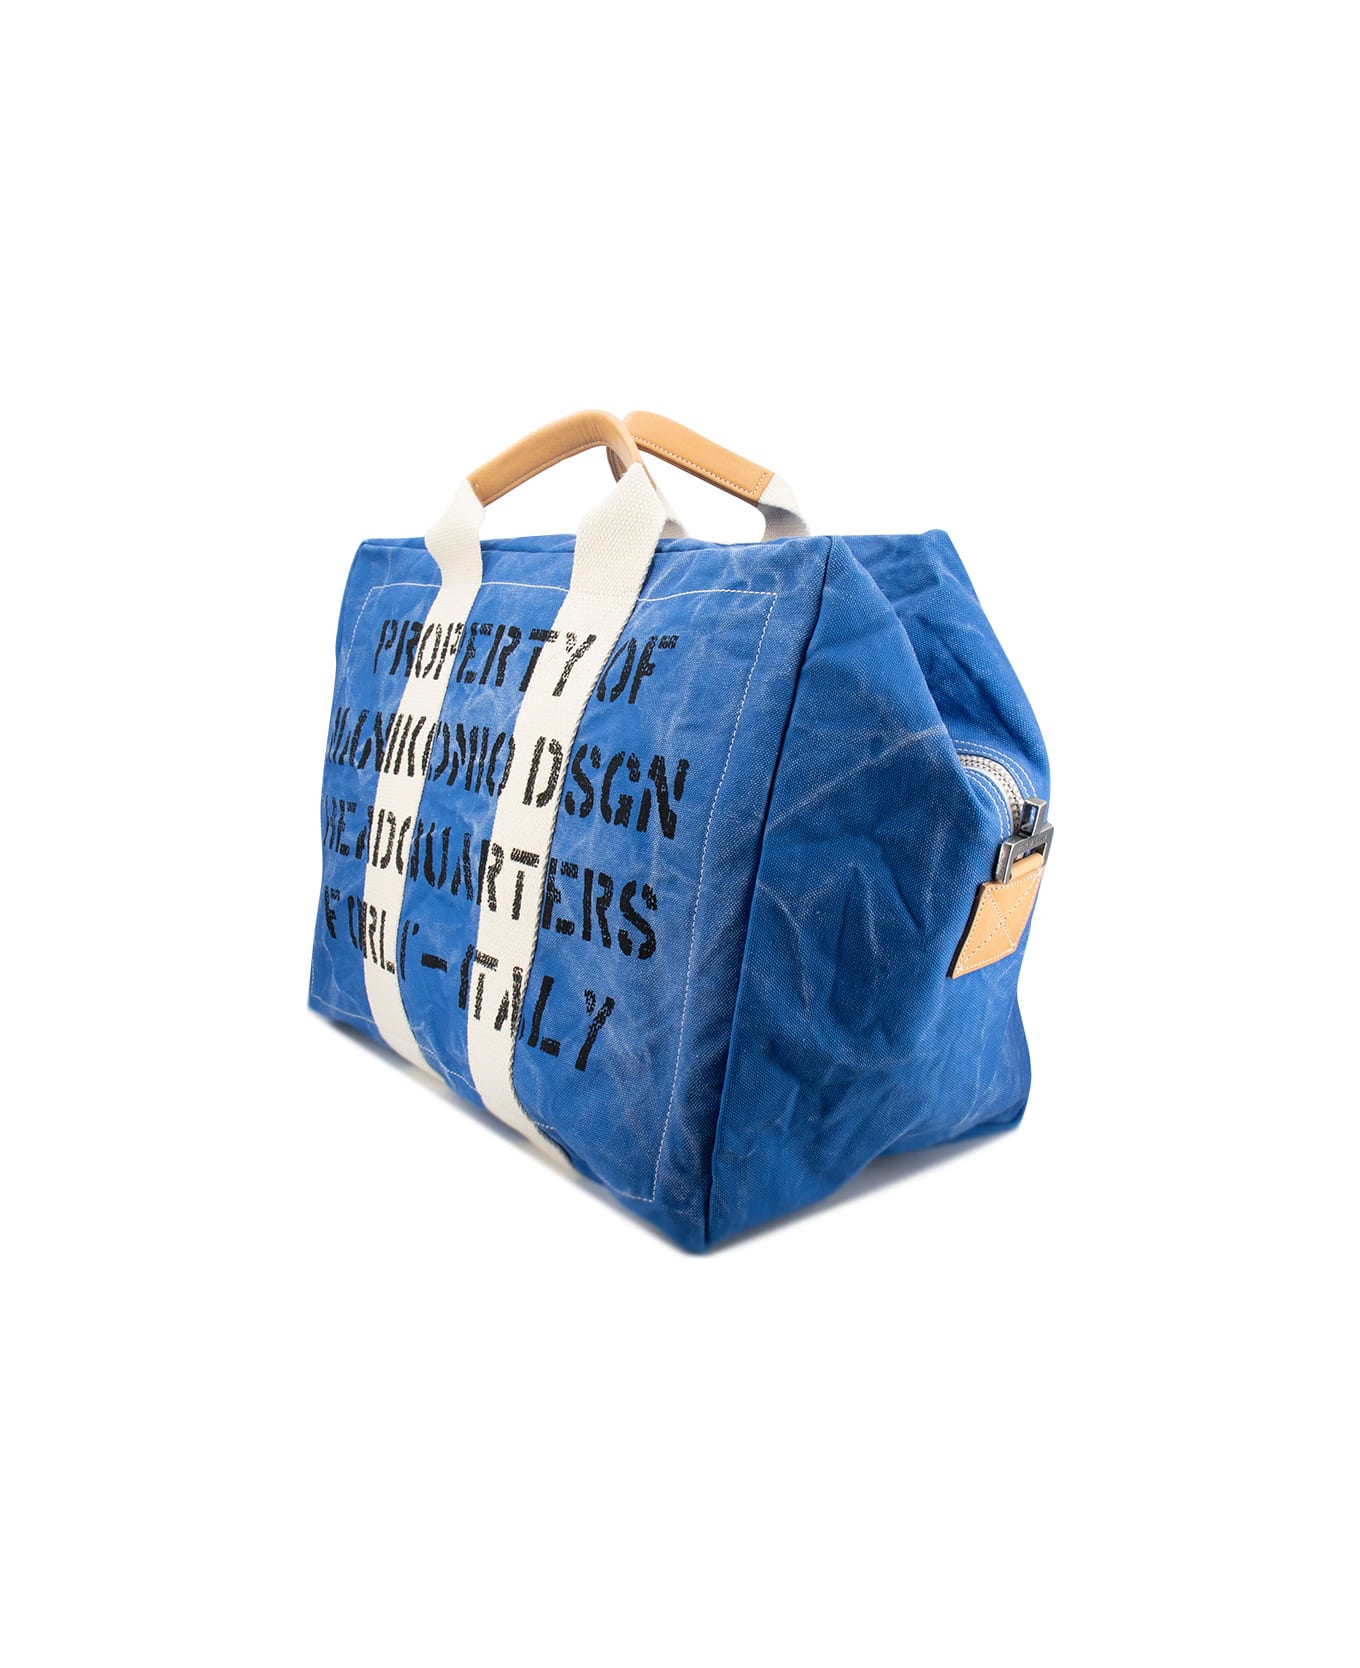 Manikomio Dsgn Bag - NAVY BLUE